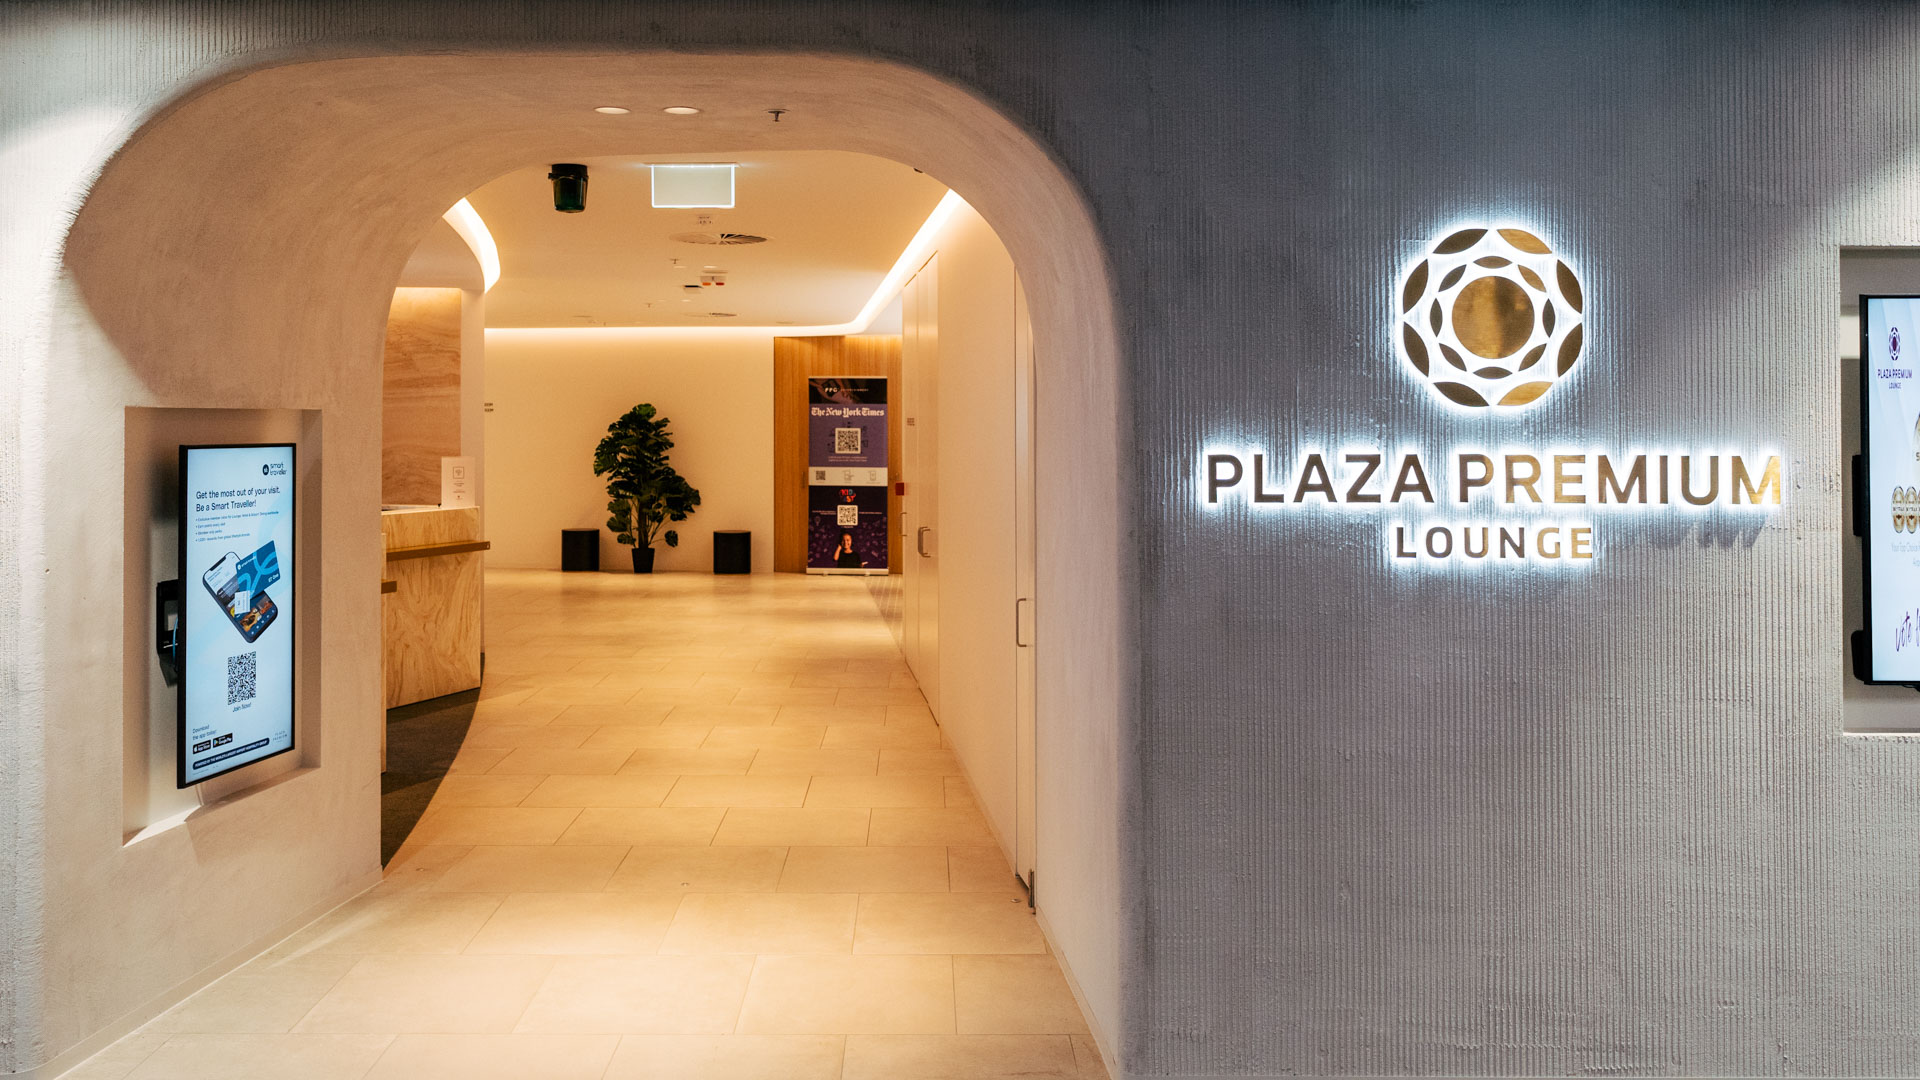 Plaza Premium Adelaide location